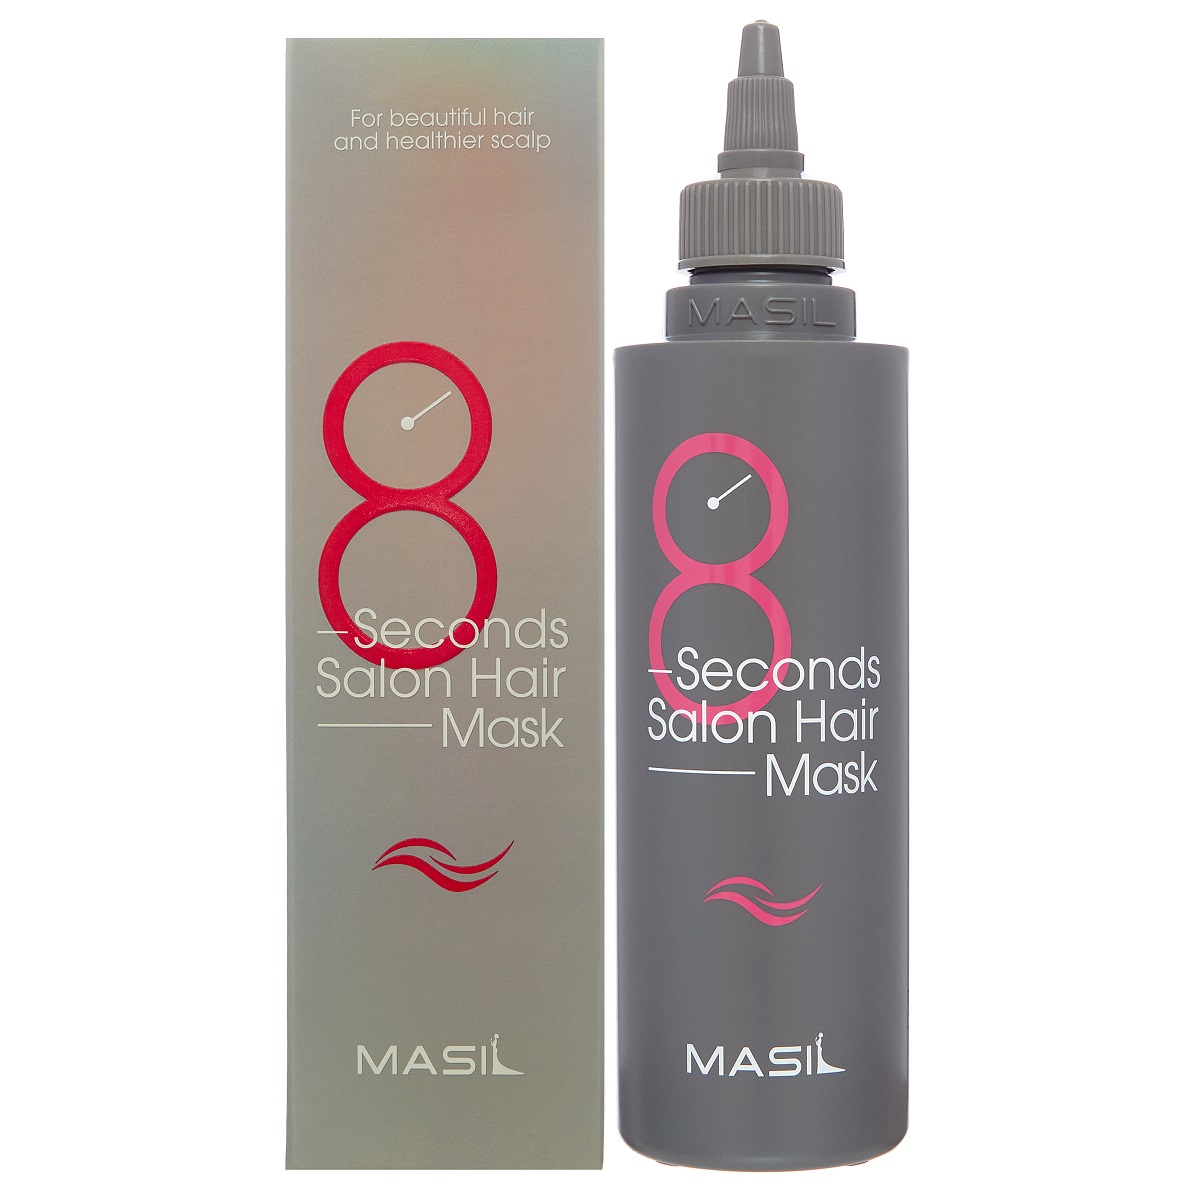 цена Masil Маска для быстрого восстановления волос 8 Seconds Salon Hair Mask, 200 мл (Masil, )